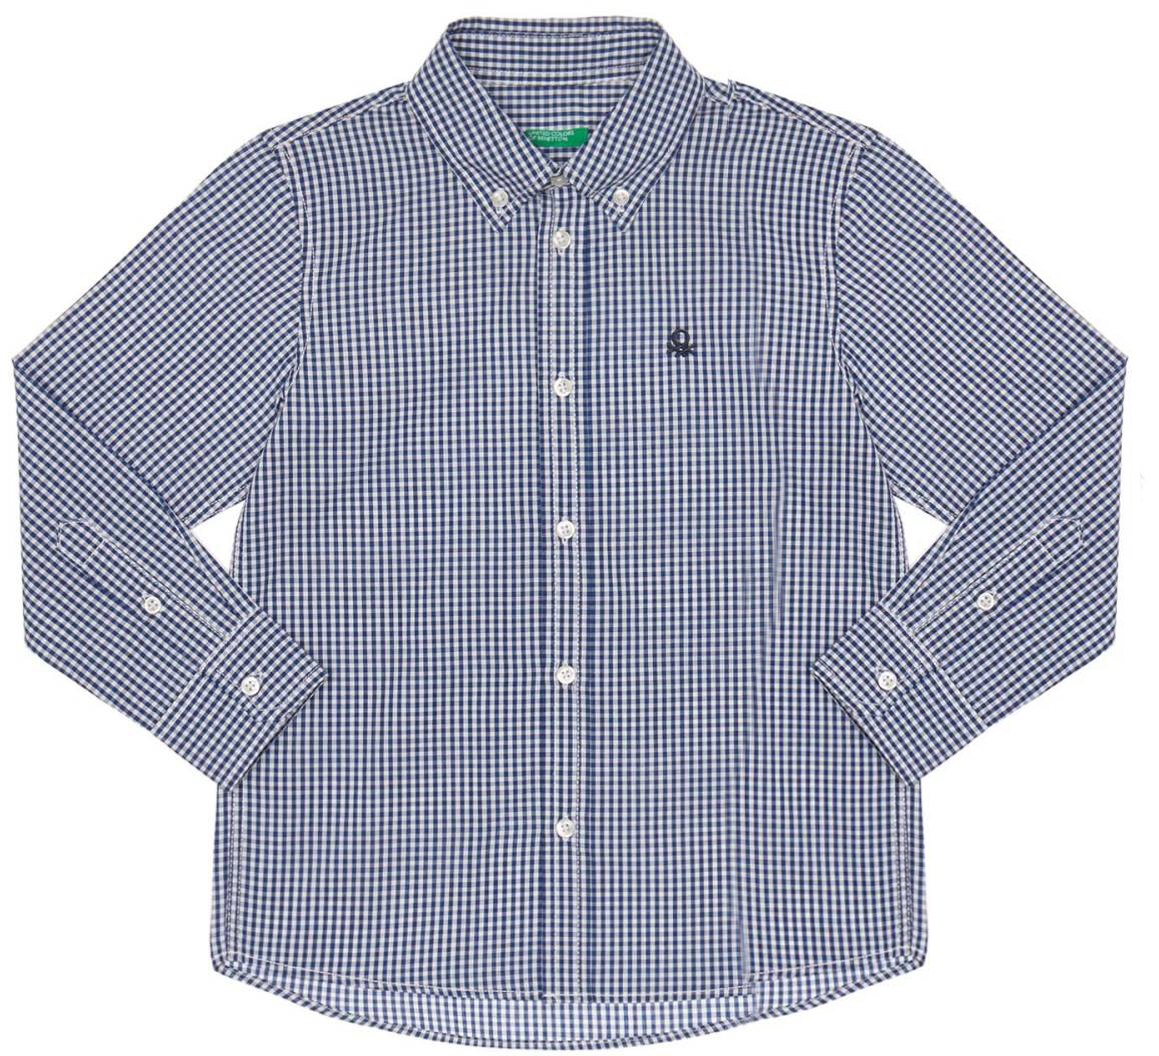 Рубашка для мальчика United Colors of Benetton, цвет: синий. 5DU65Q200_949. Размер 90